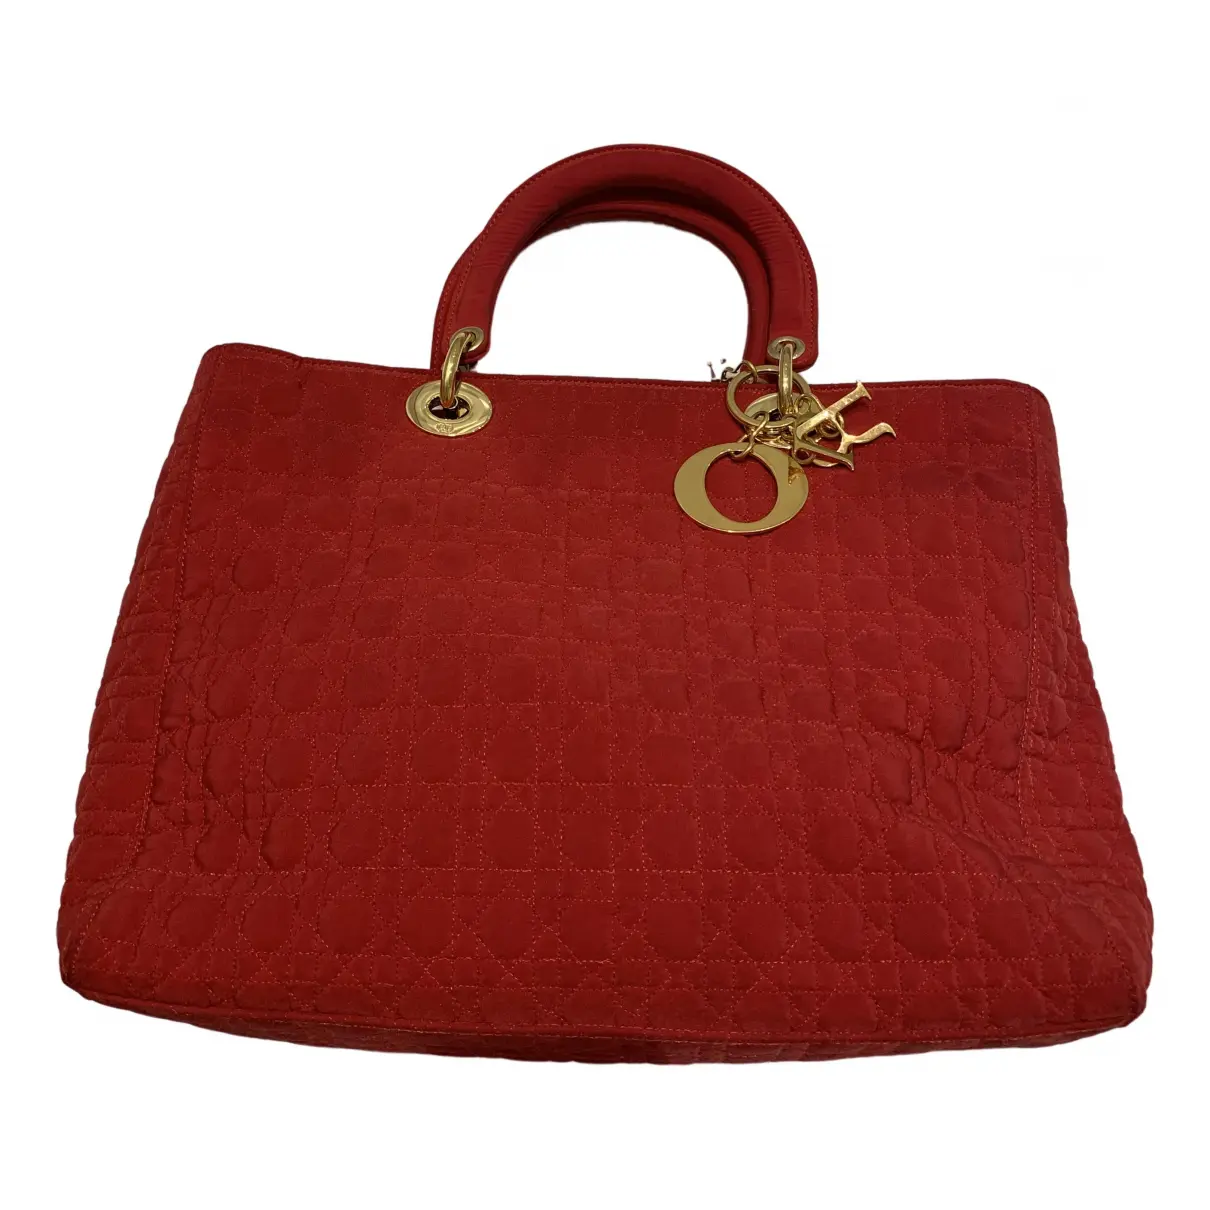 Lady Dior handbag Dior - Vintage